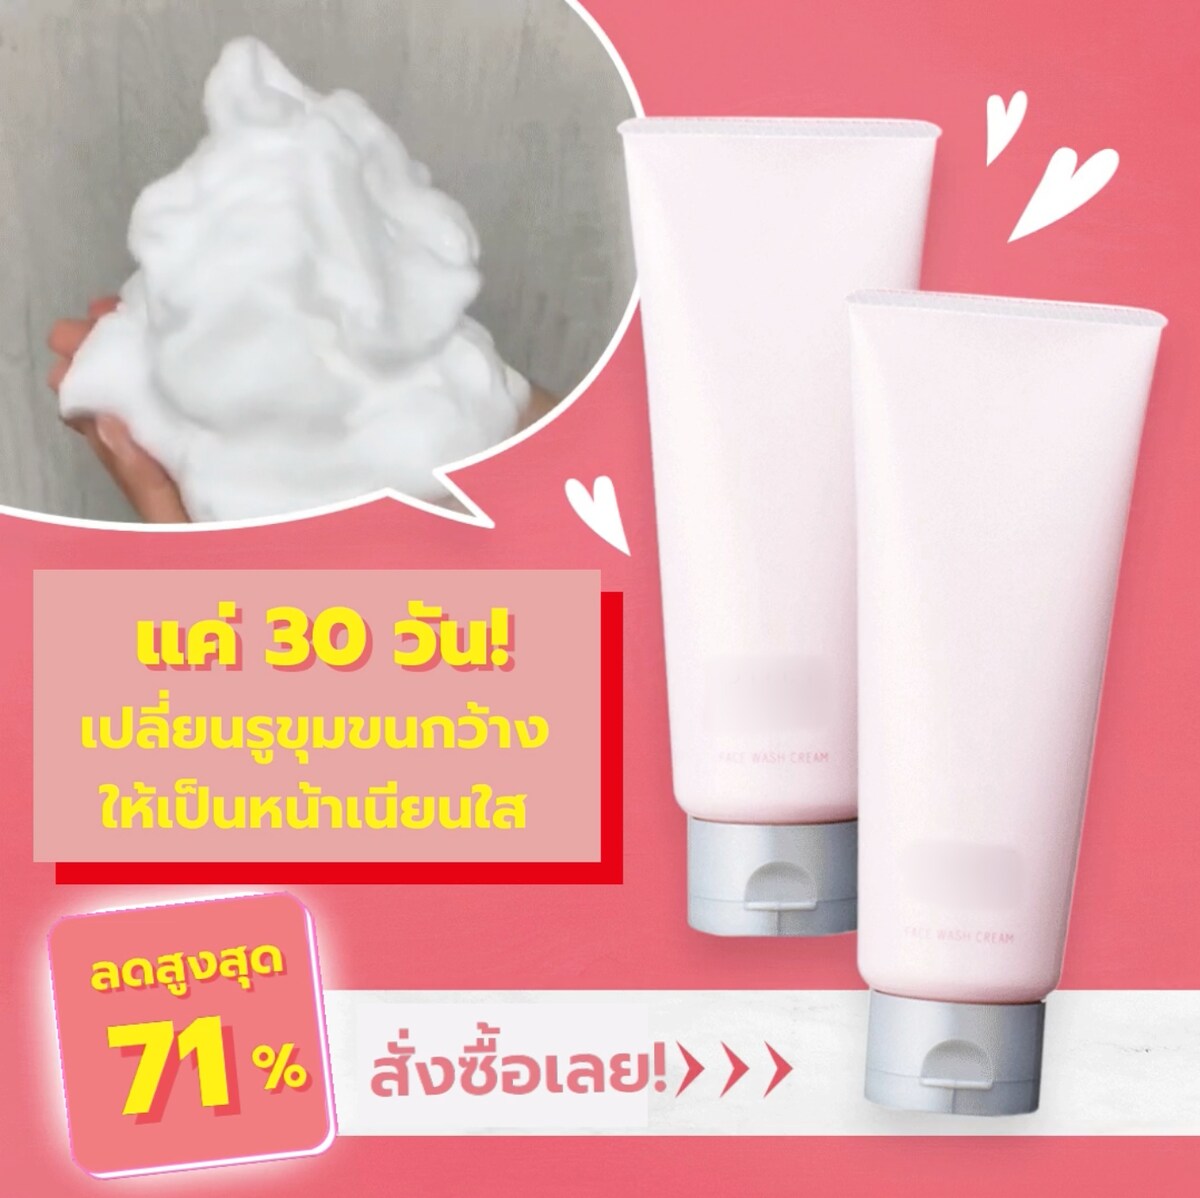 女性向け洗顔フォーム商材の広告バナー